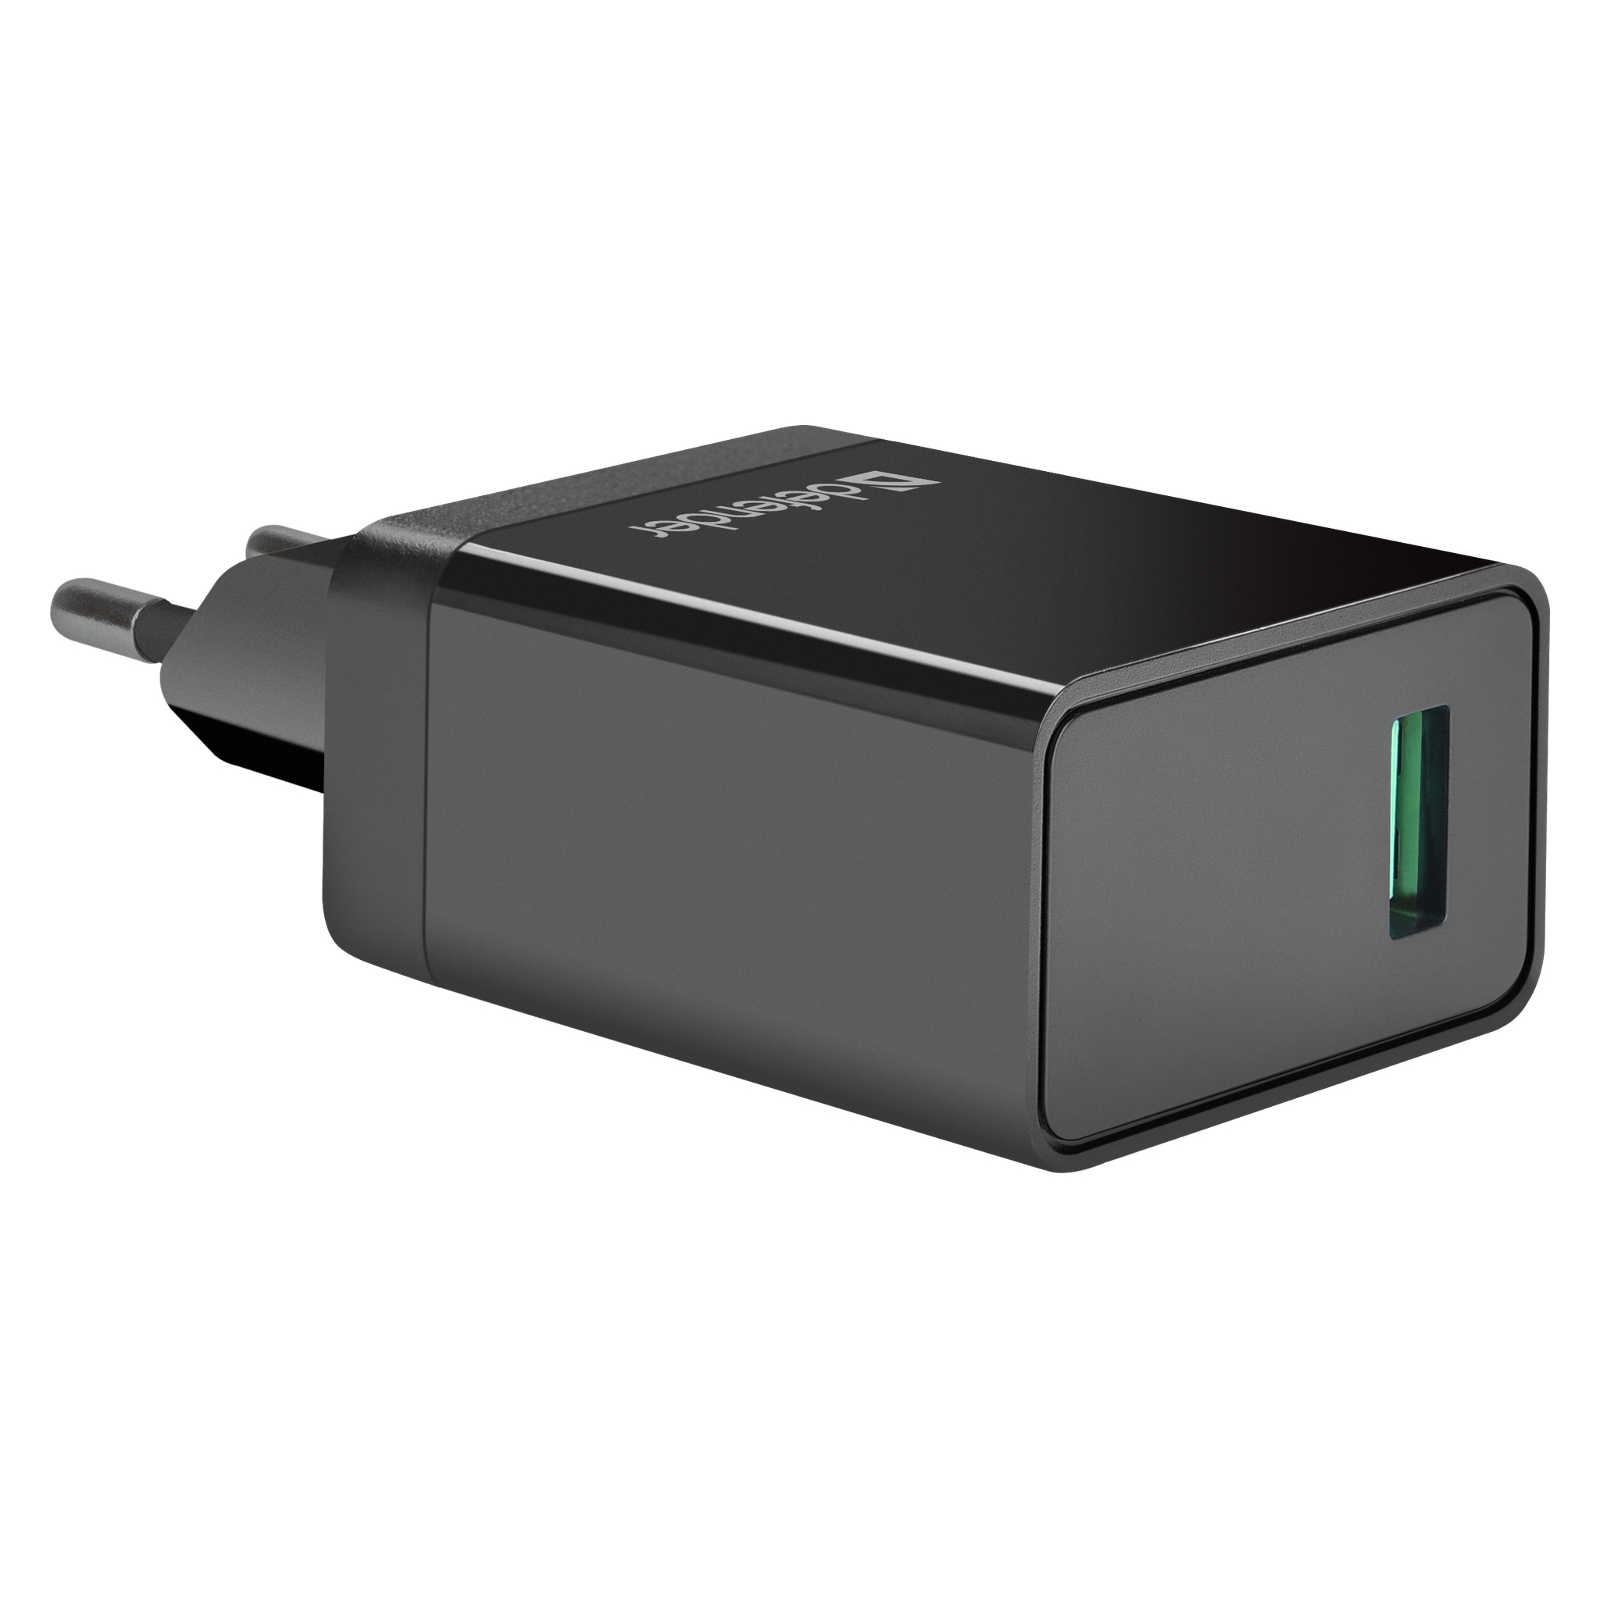 Зарядное устройство Defender UPA-101 black, 1 USB, QC 3.0, 18W (83573) изображение 2